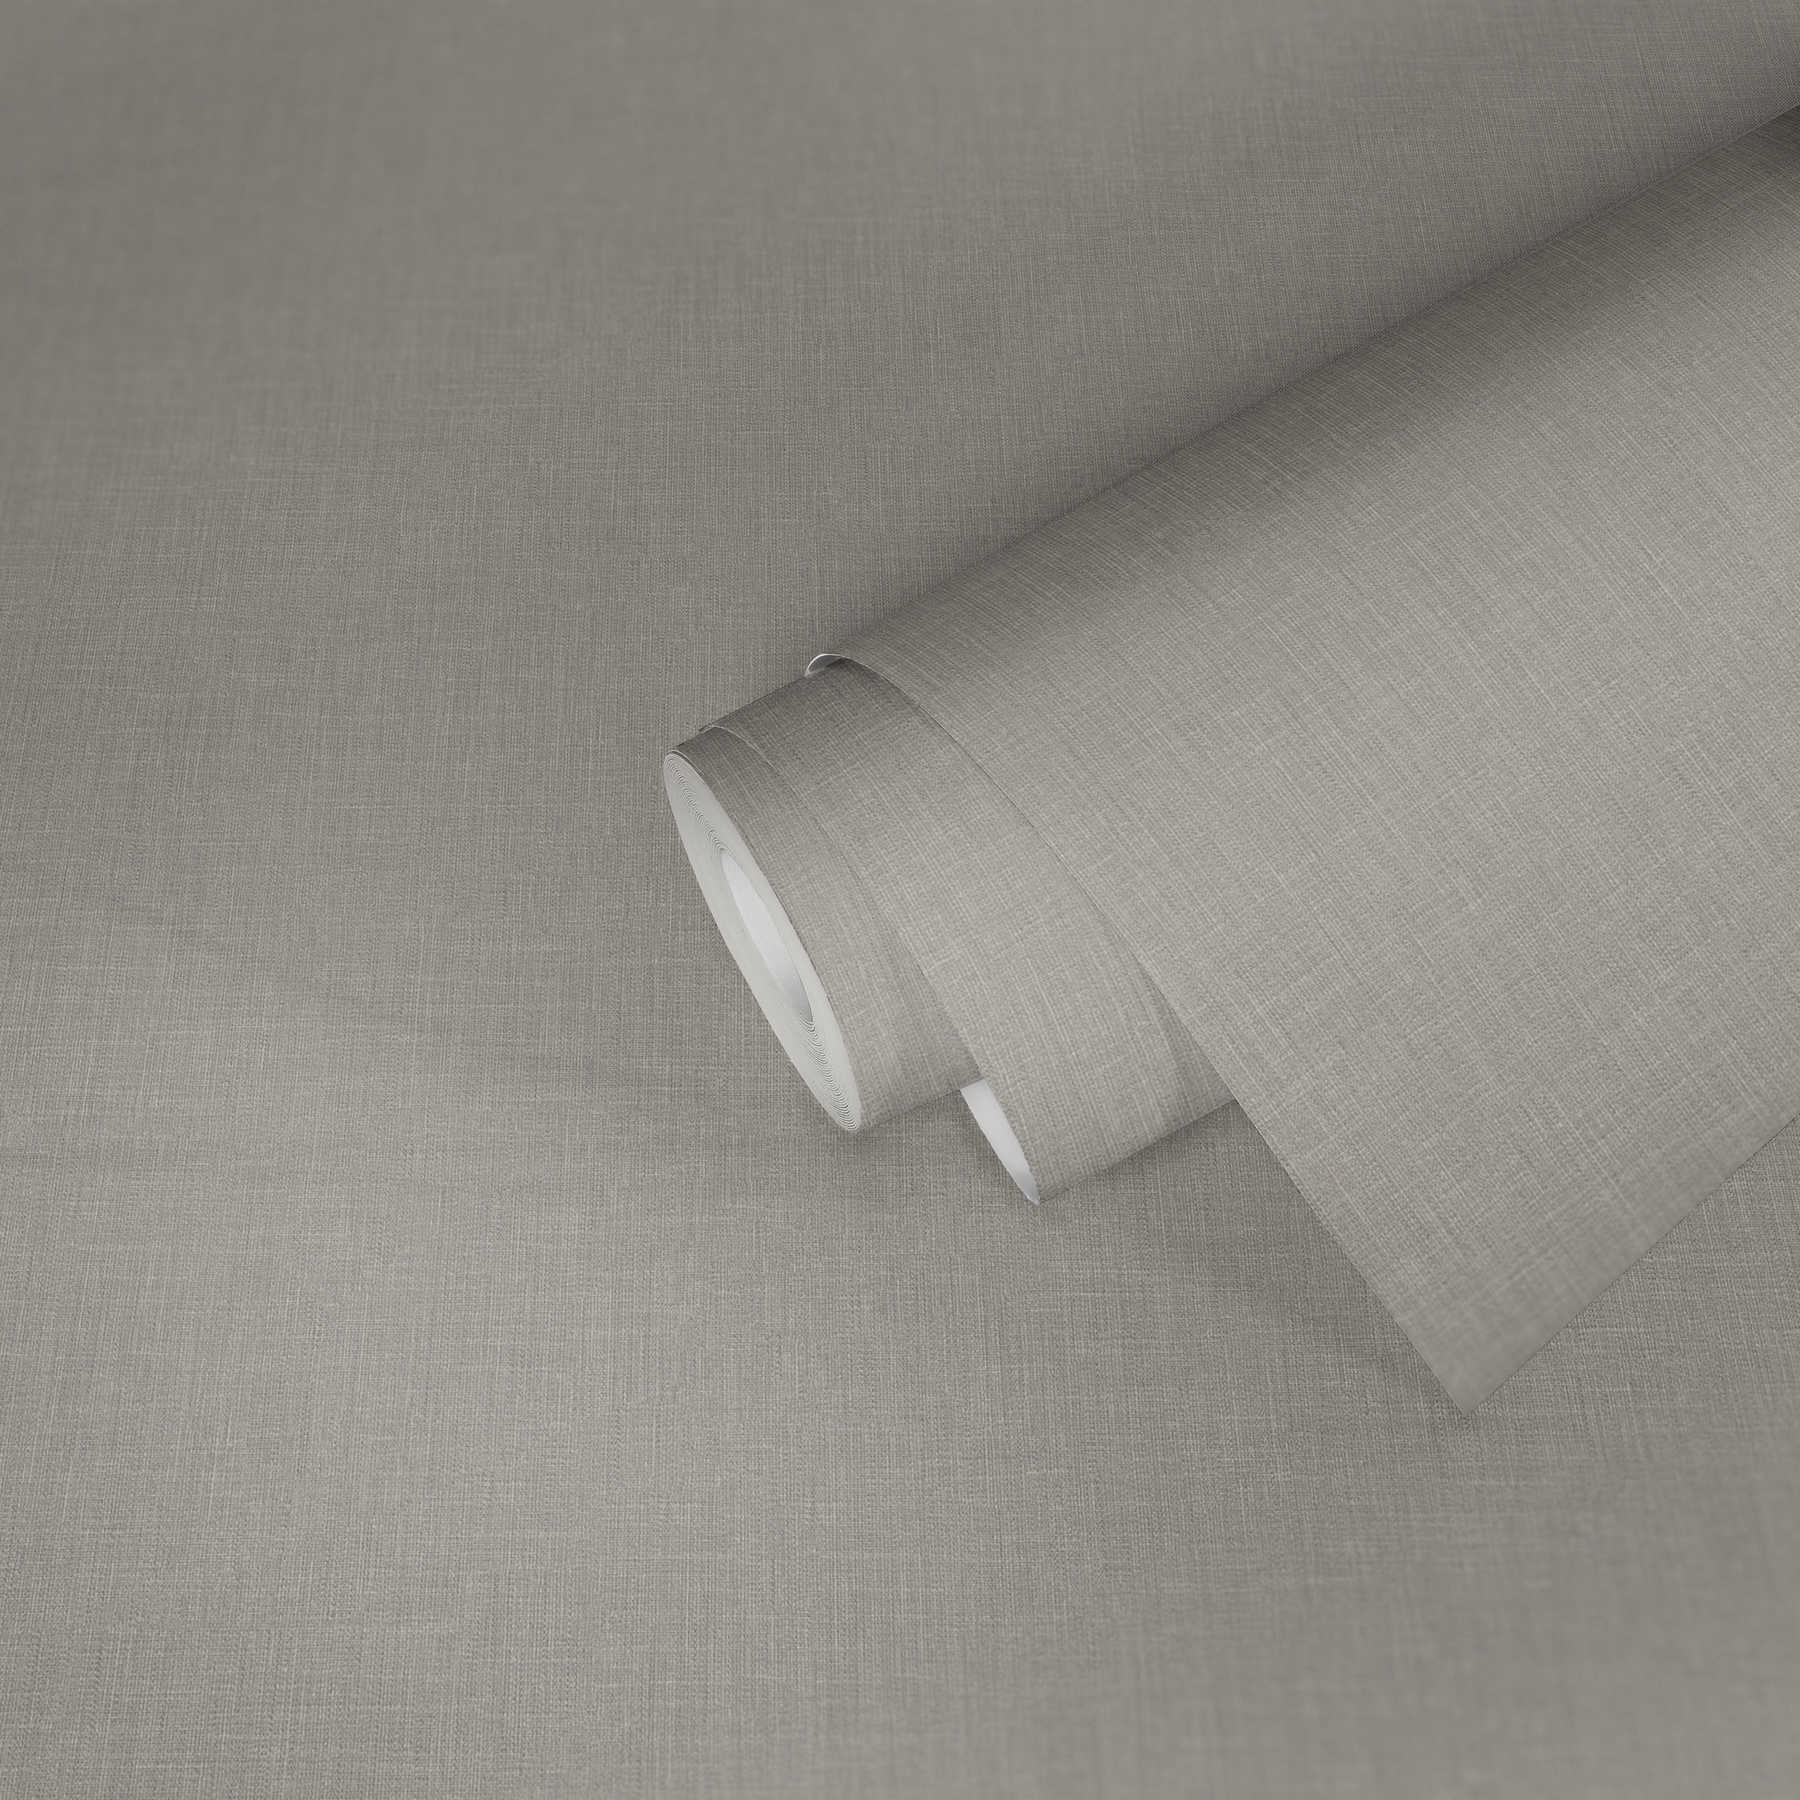             Papier peint intissé gris avec aspect textile & motifs structurés
        